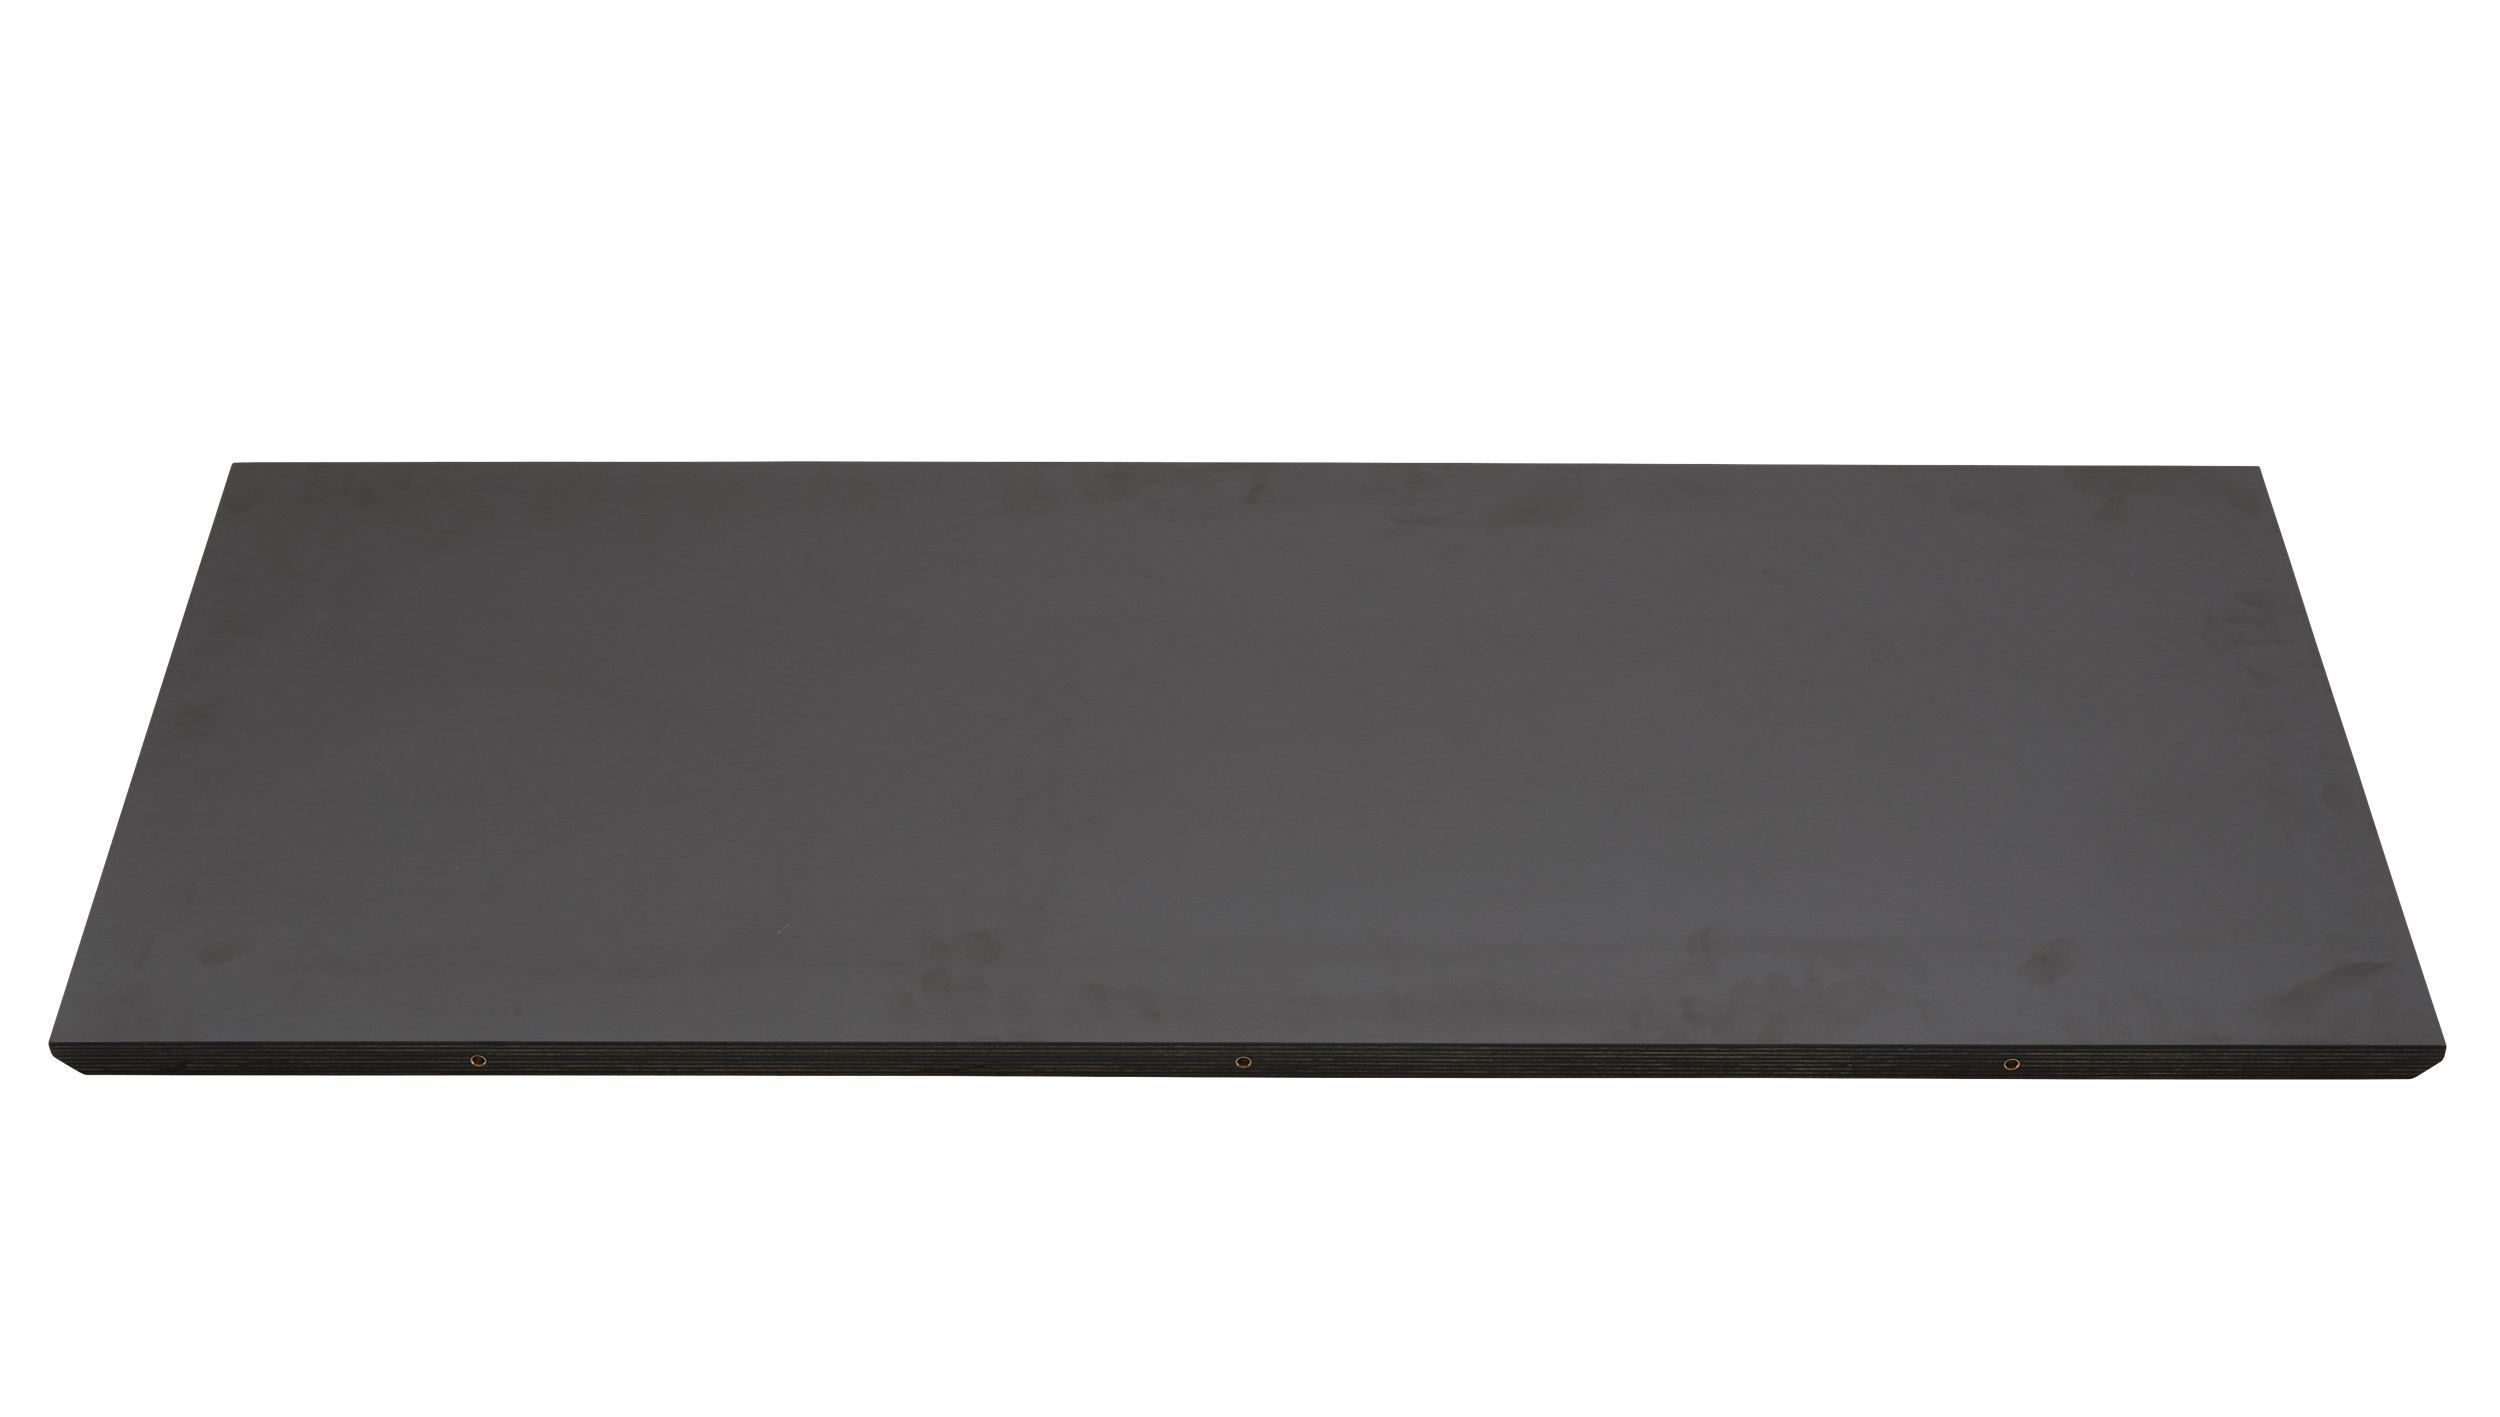 Haslev 9 Iläggsplatta 50 x 120 cm - Topp i grafitgrå laminat och kant i mörk, gråoljad plywood